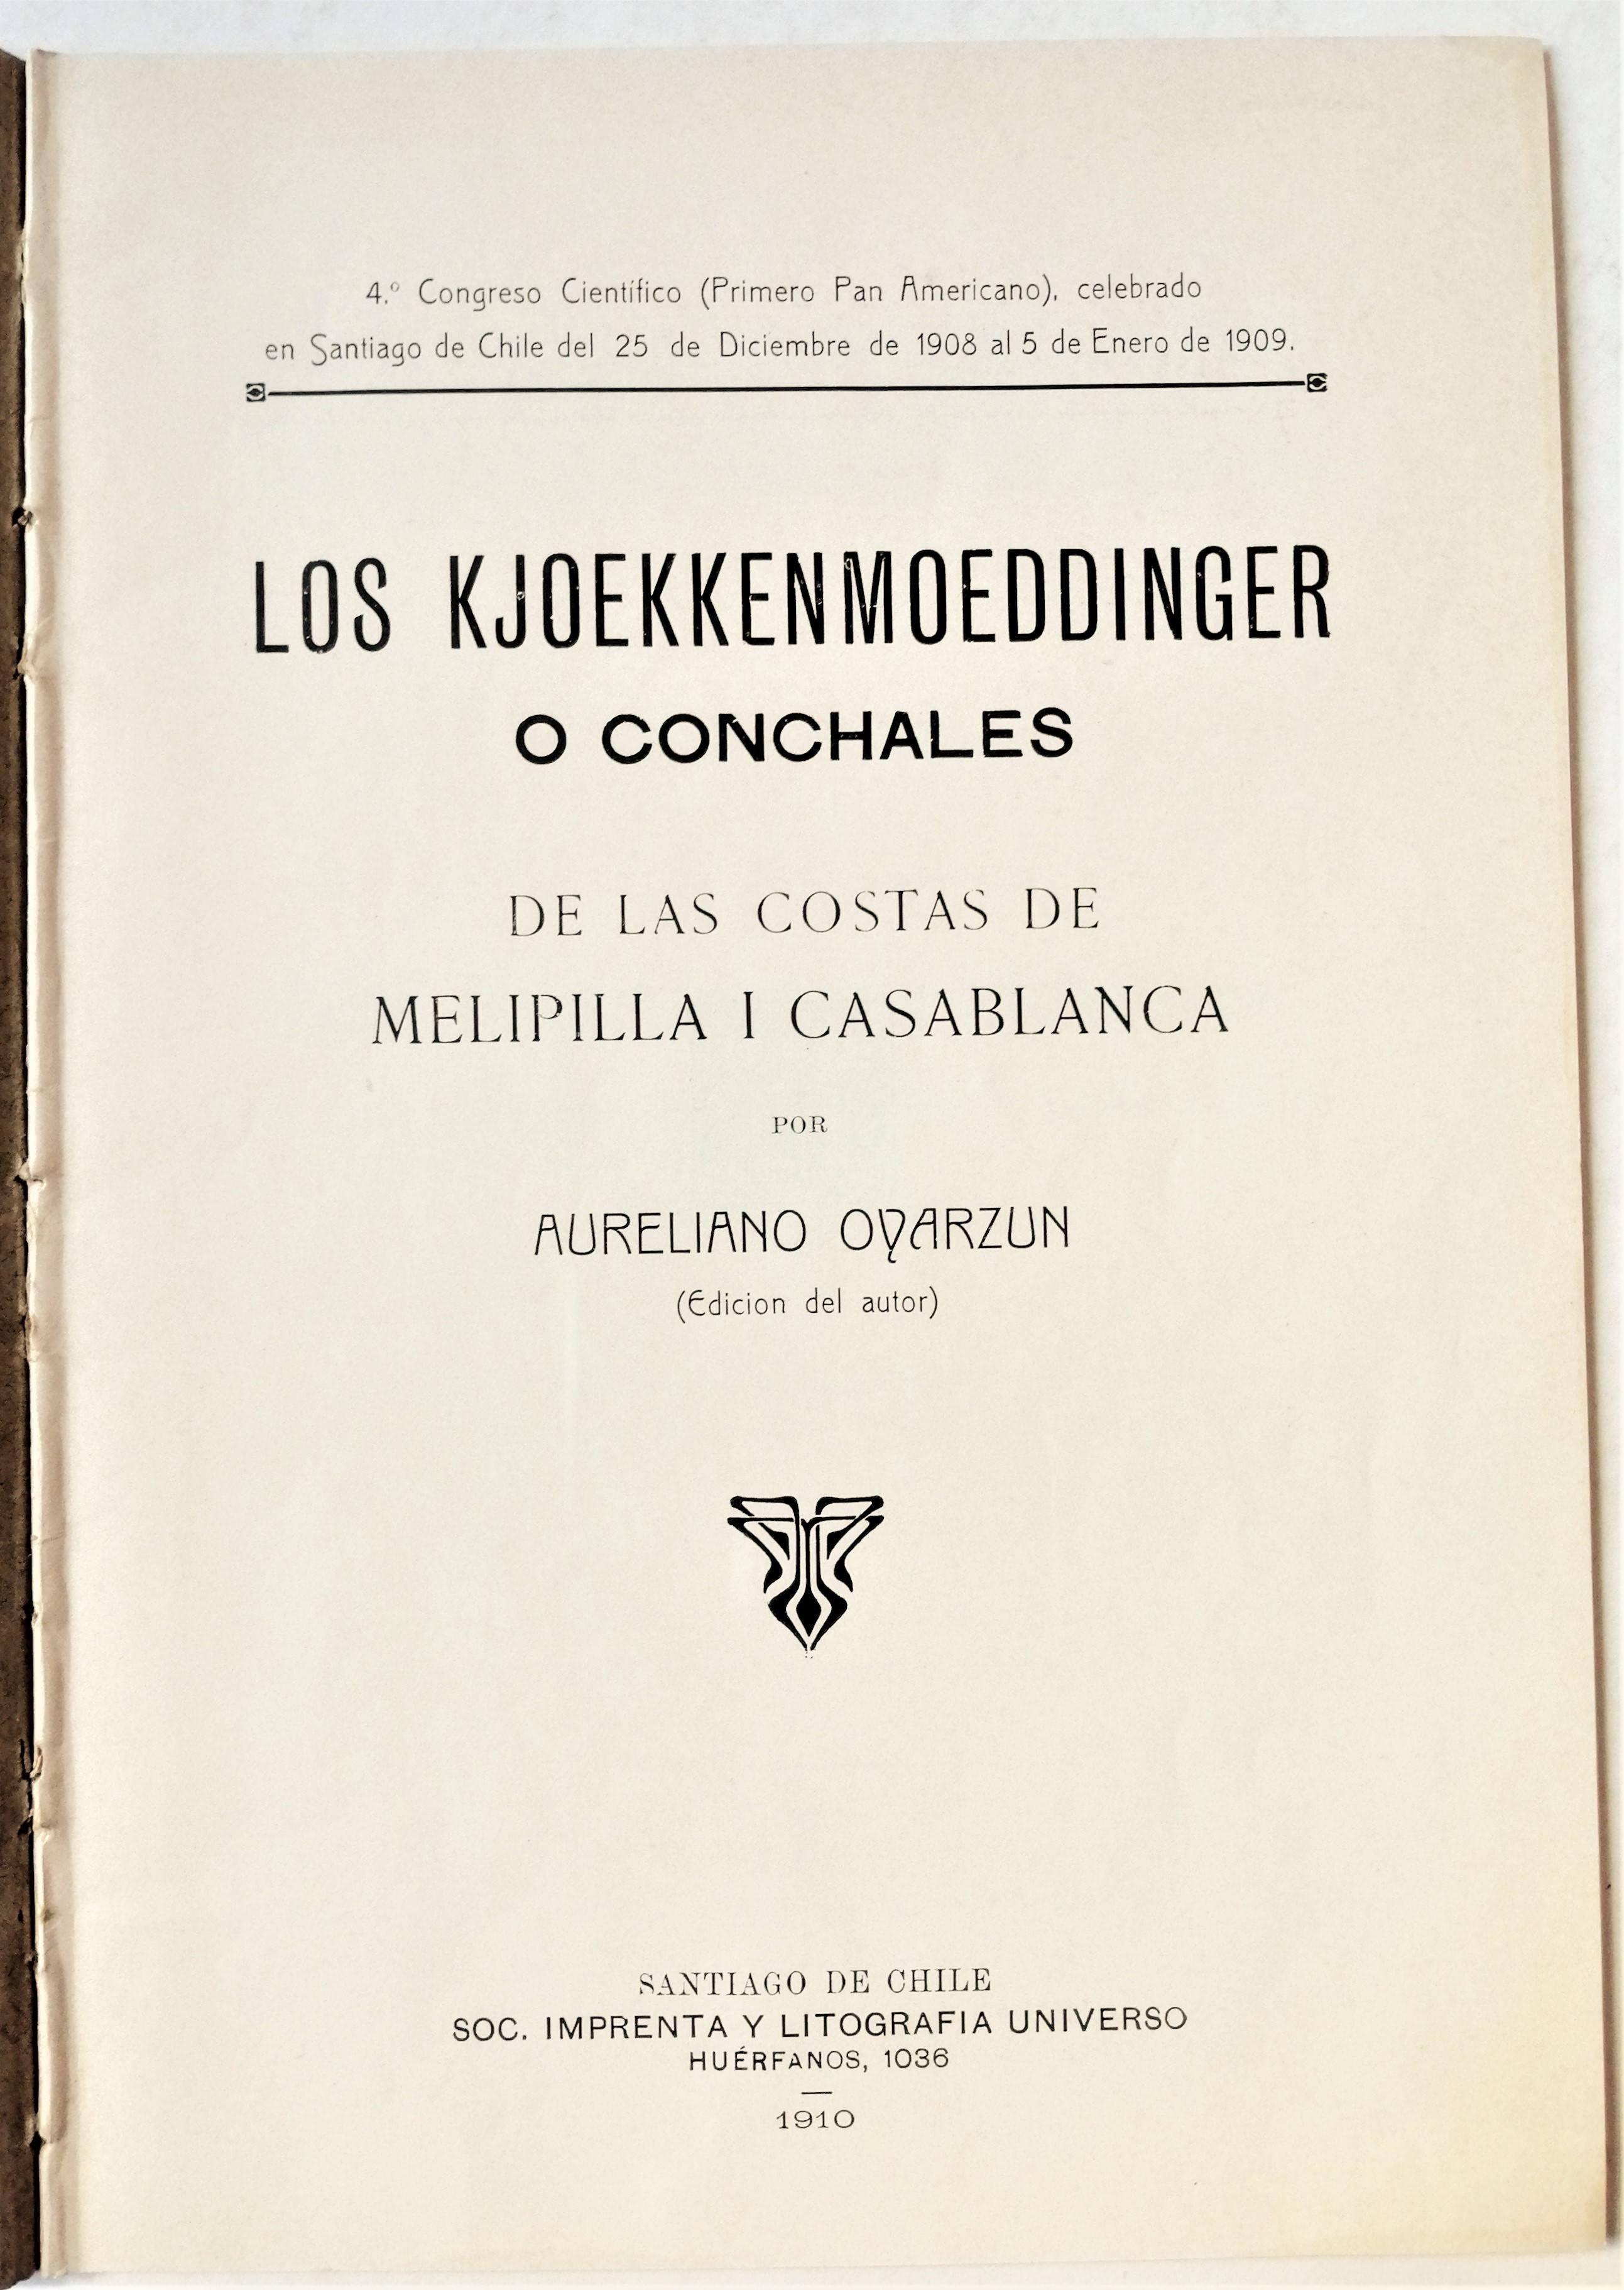 Aureliano Oyarzún - Los Kjoekkenmoeddinger o conchales de las costas de Melipilla I Casablanca